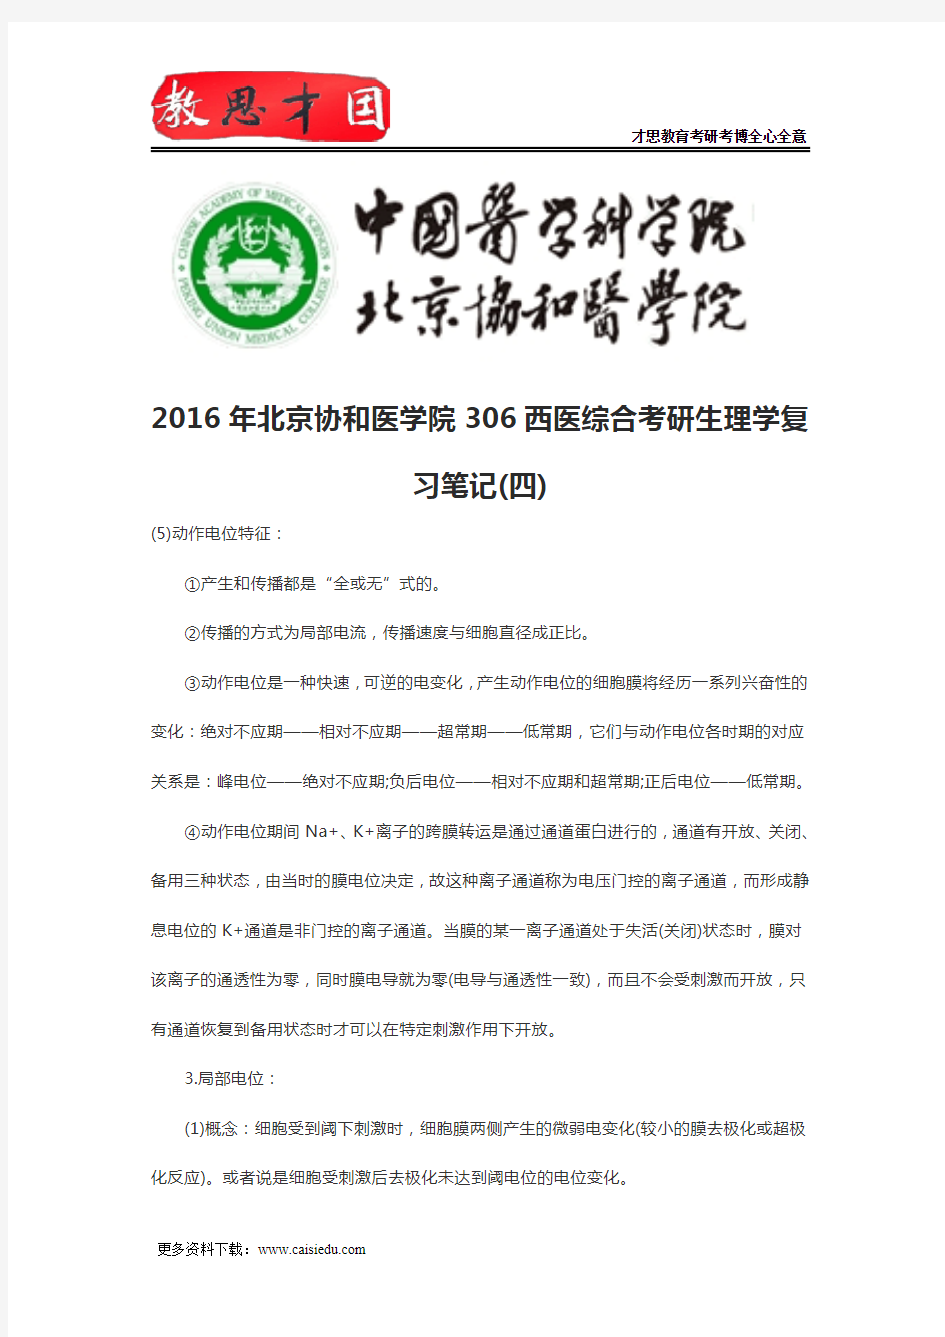 2016年北京协和医学院306西医综合考研生理学复习笔记(四)